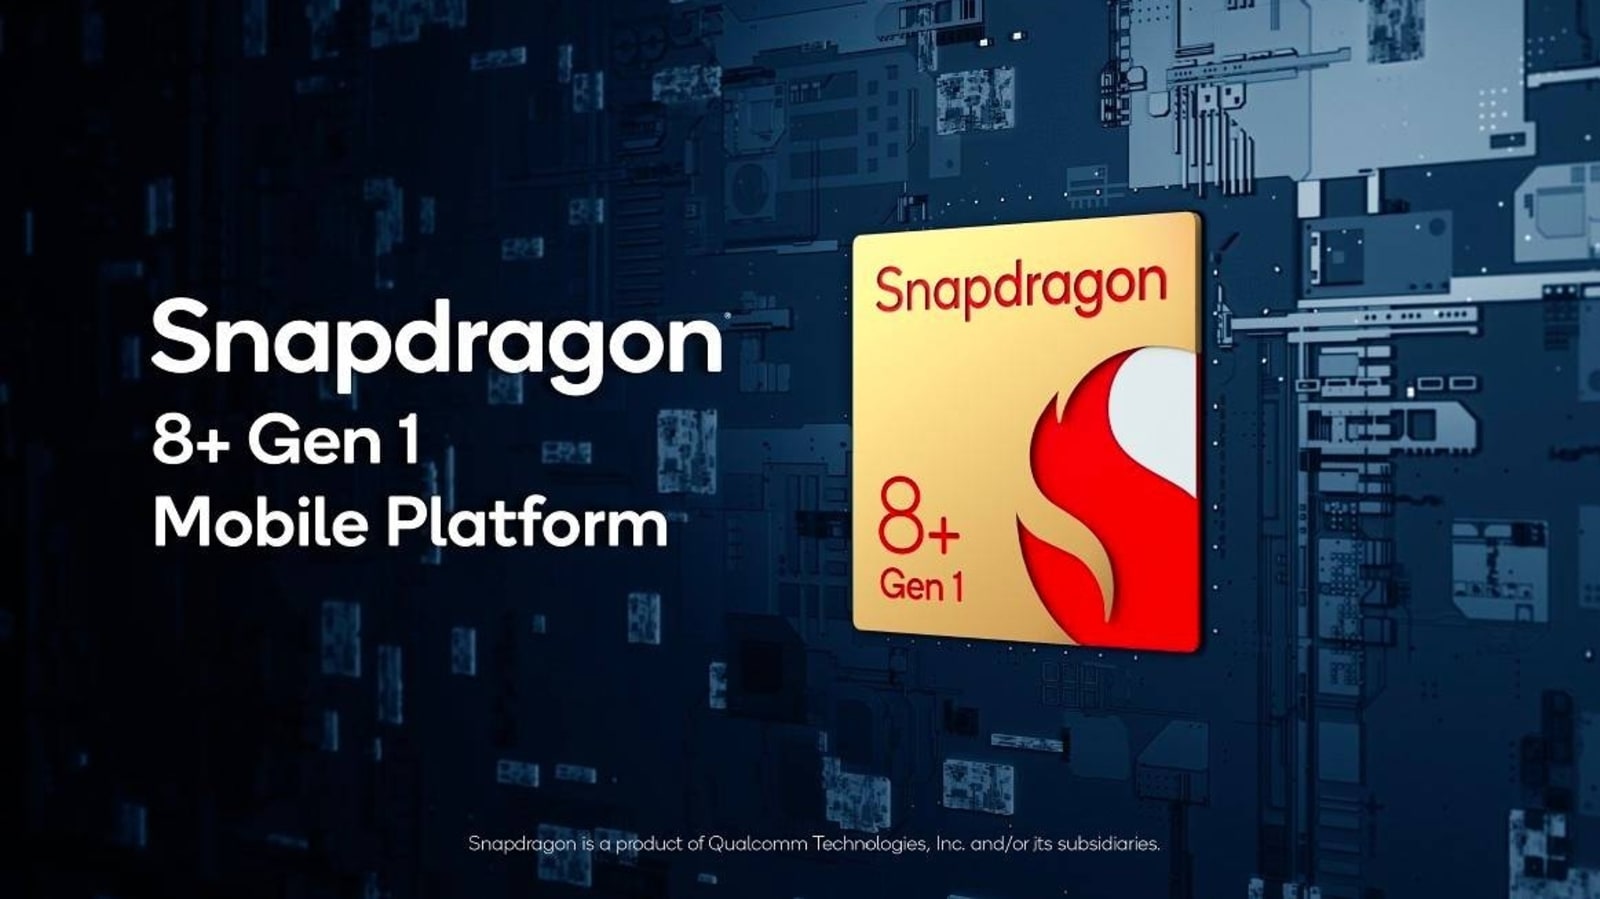 Snapdragon 7 Gen 1 hadir untuk mendukung Android kelas menengah!  Snapdragon 8+ Gen 1 untuk flagships